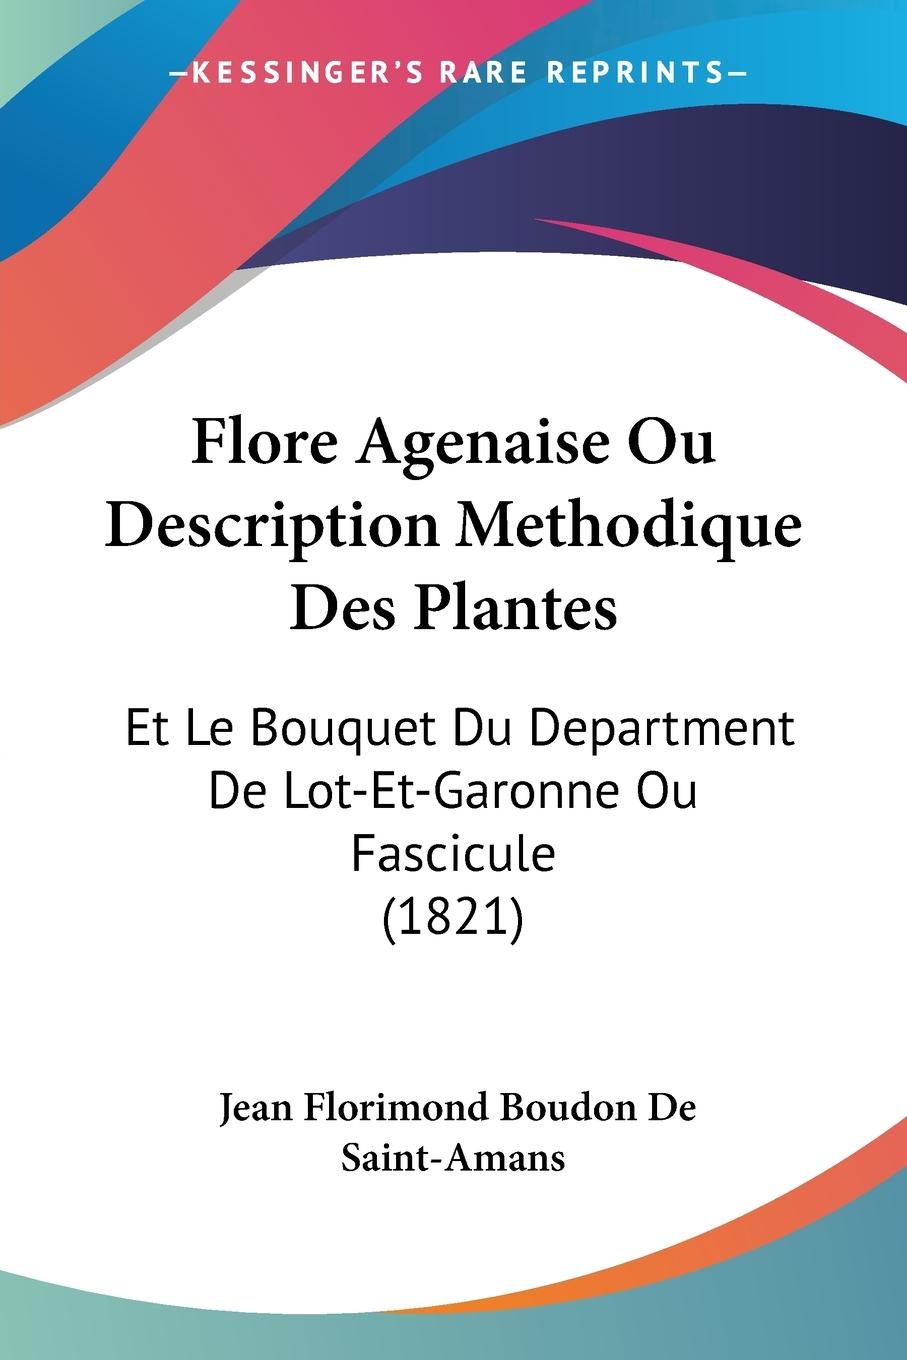 Flore Agenaise Ou Description Methodique Des Plantes - De Saint-Amans, Jean Florimond Boudon